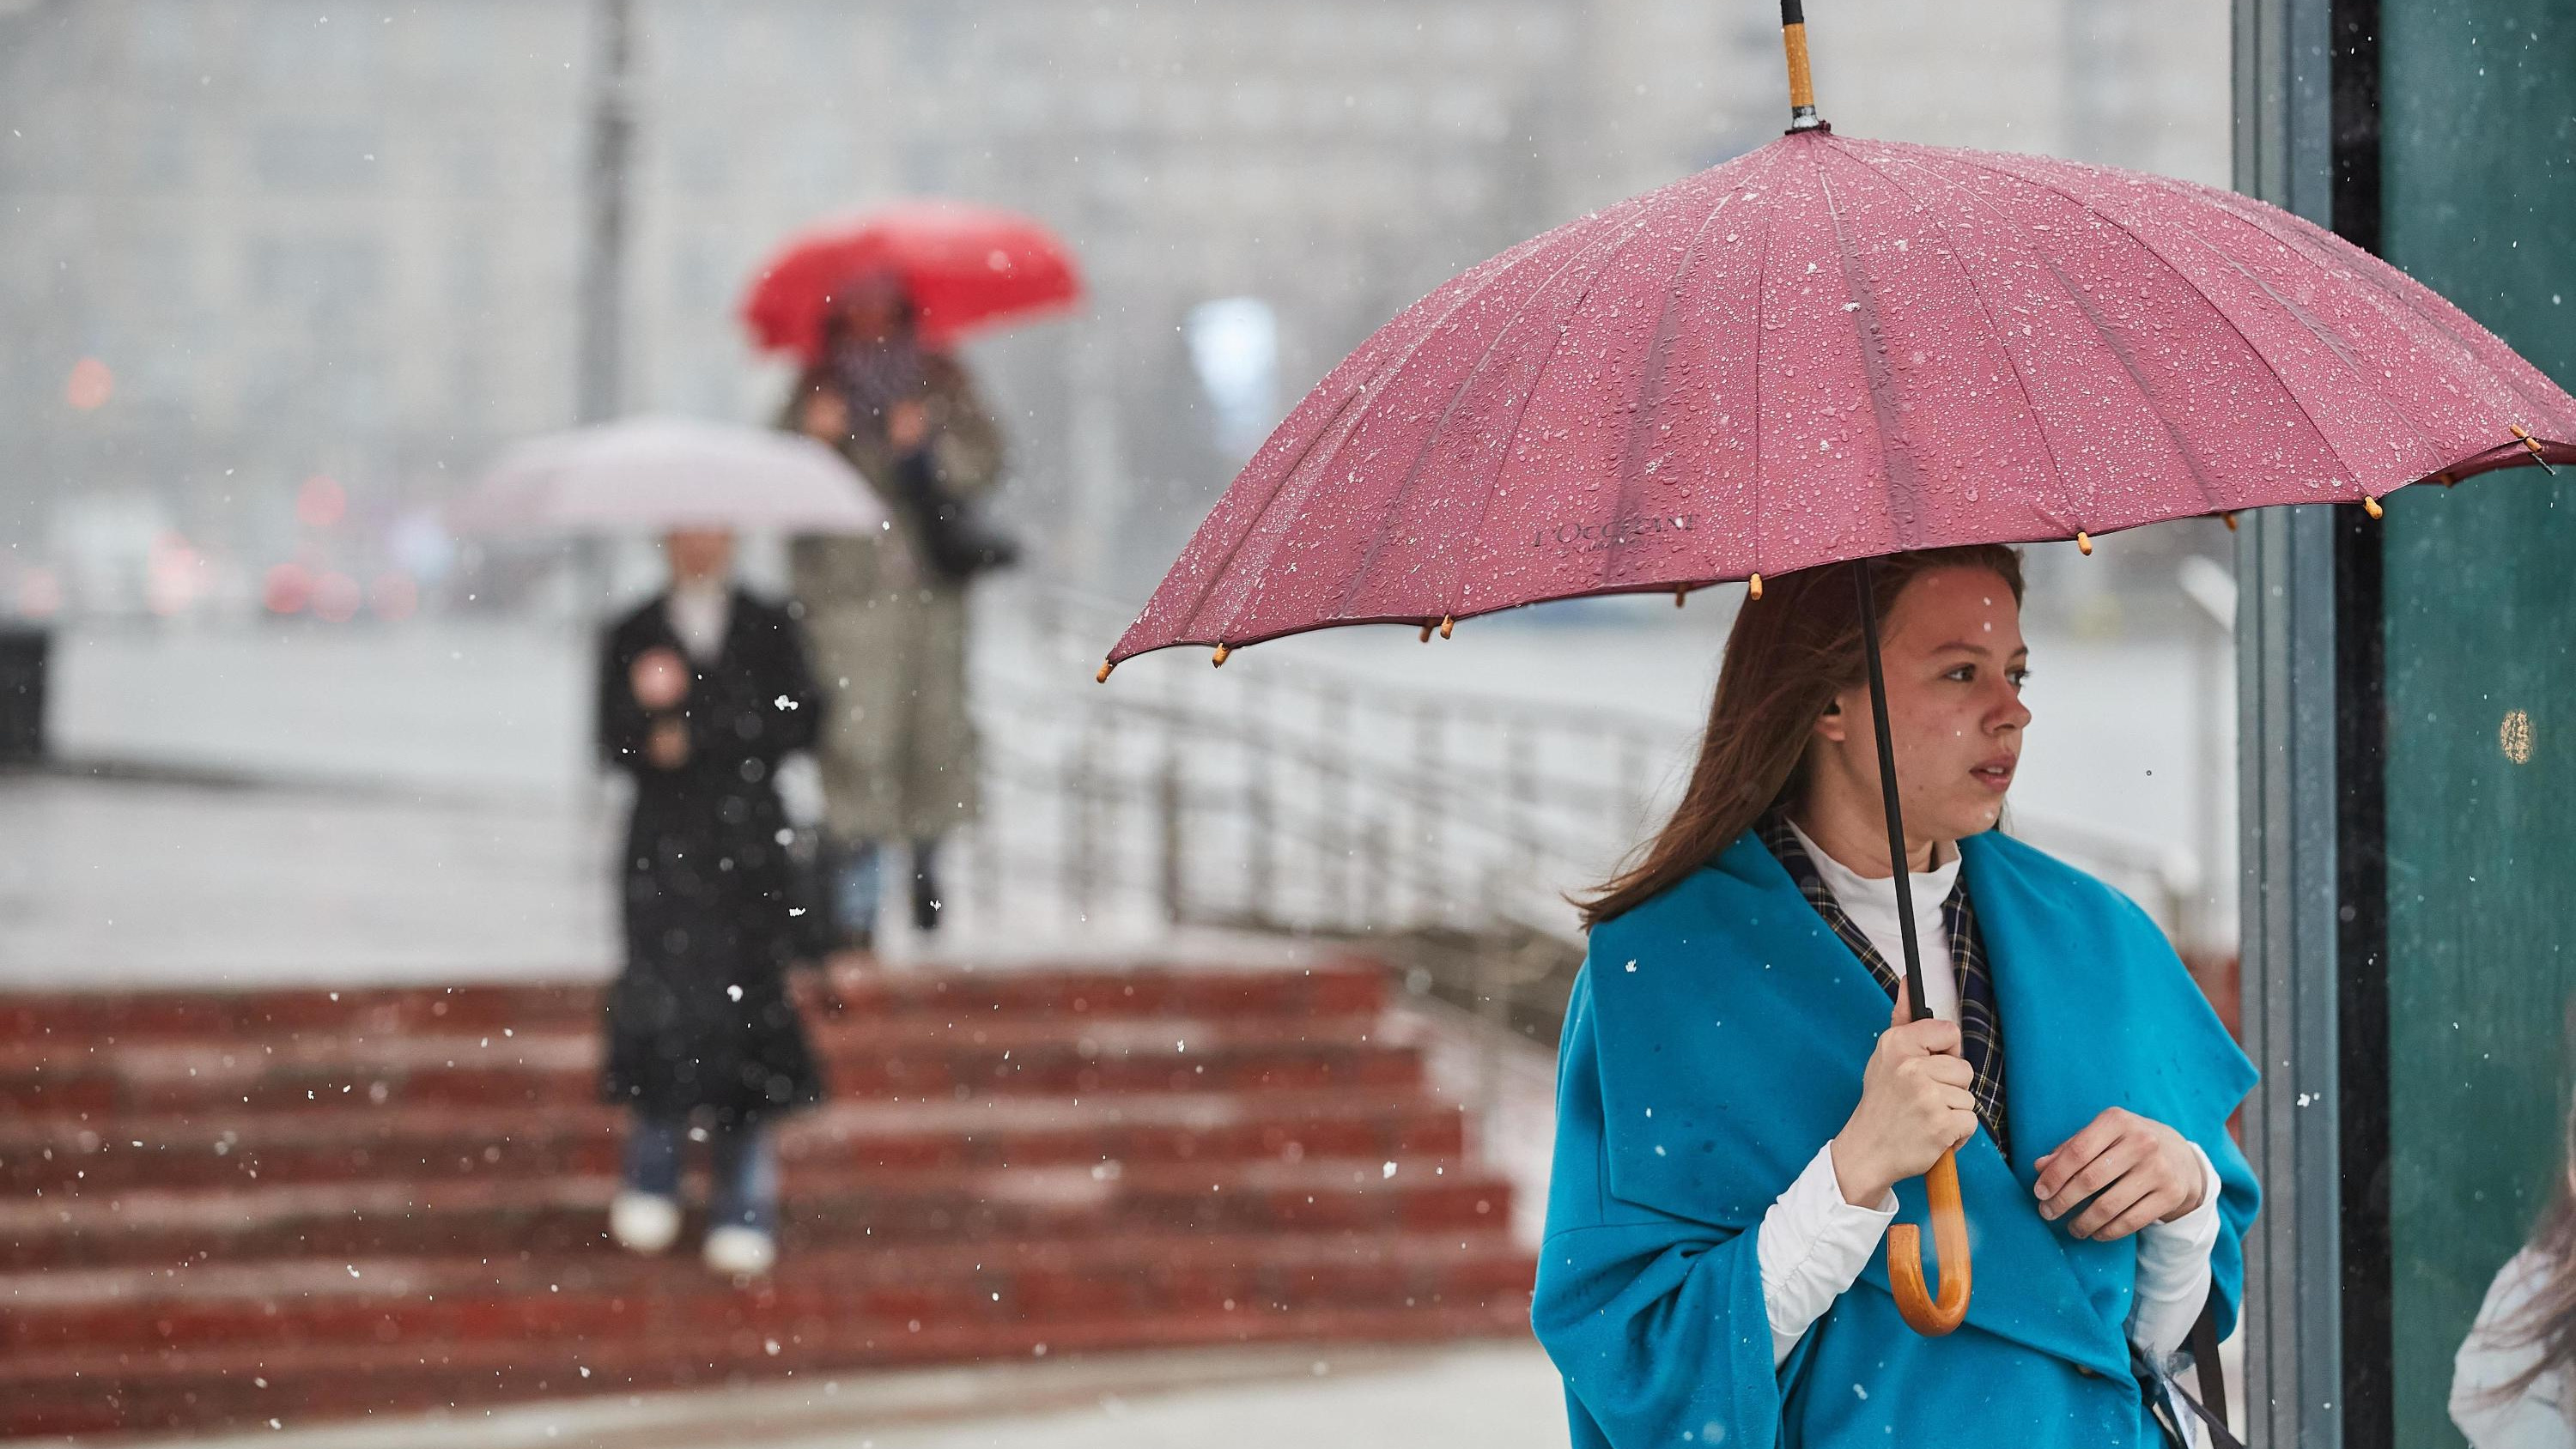 Пасмурно и сыро: какой будет погода на следующей неделе в Новосибирске — прогноз с одним теплым днем